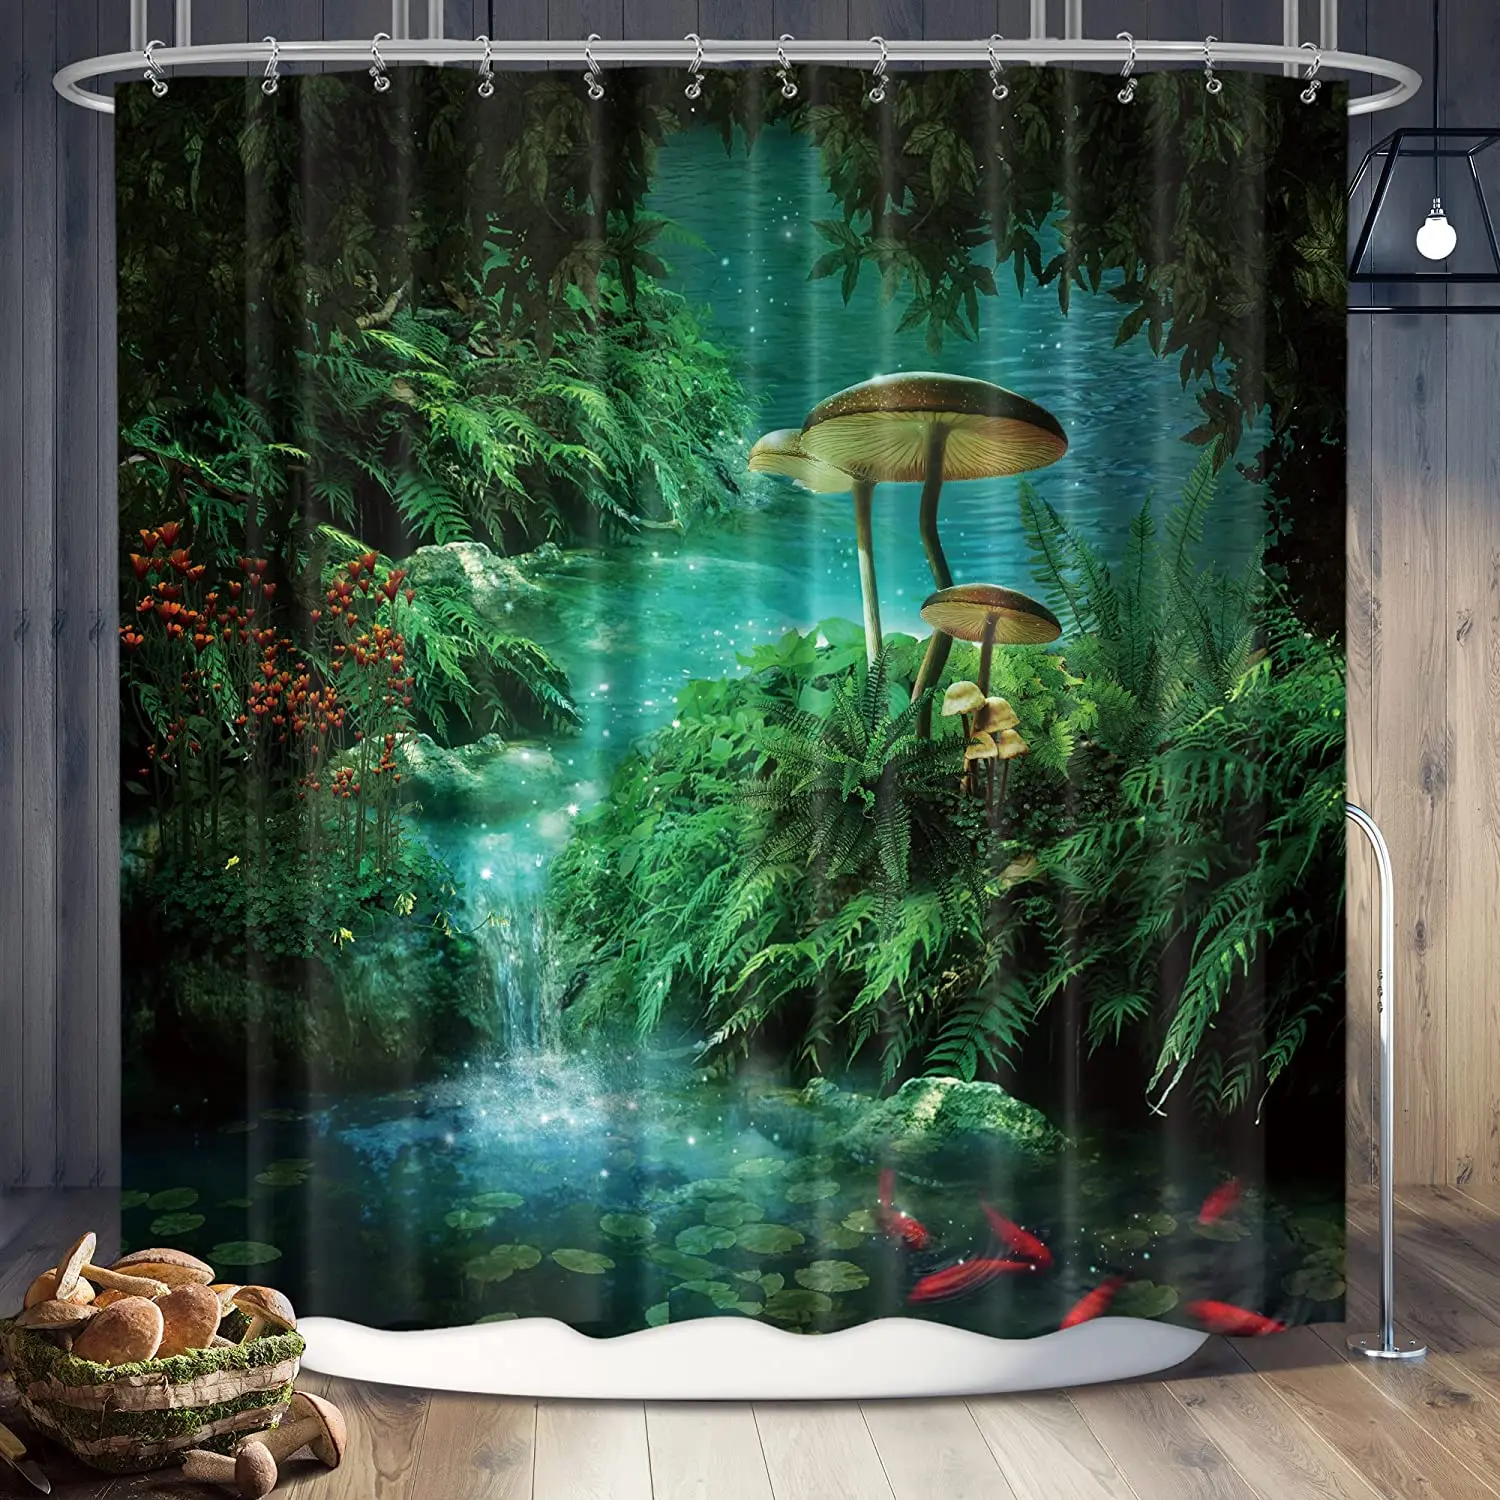 Cortina de ducha de seta de fantasía, Panel gótico de hada del bosque, árbol, verde jungla, Zen, río, Trippy, decoración de baño, resistente al agua, 72x72 pulgadas